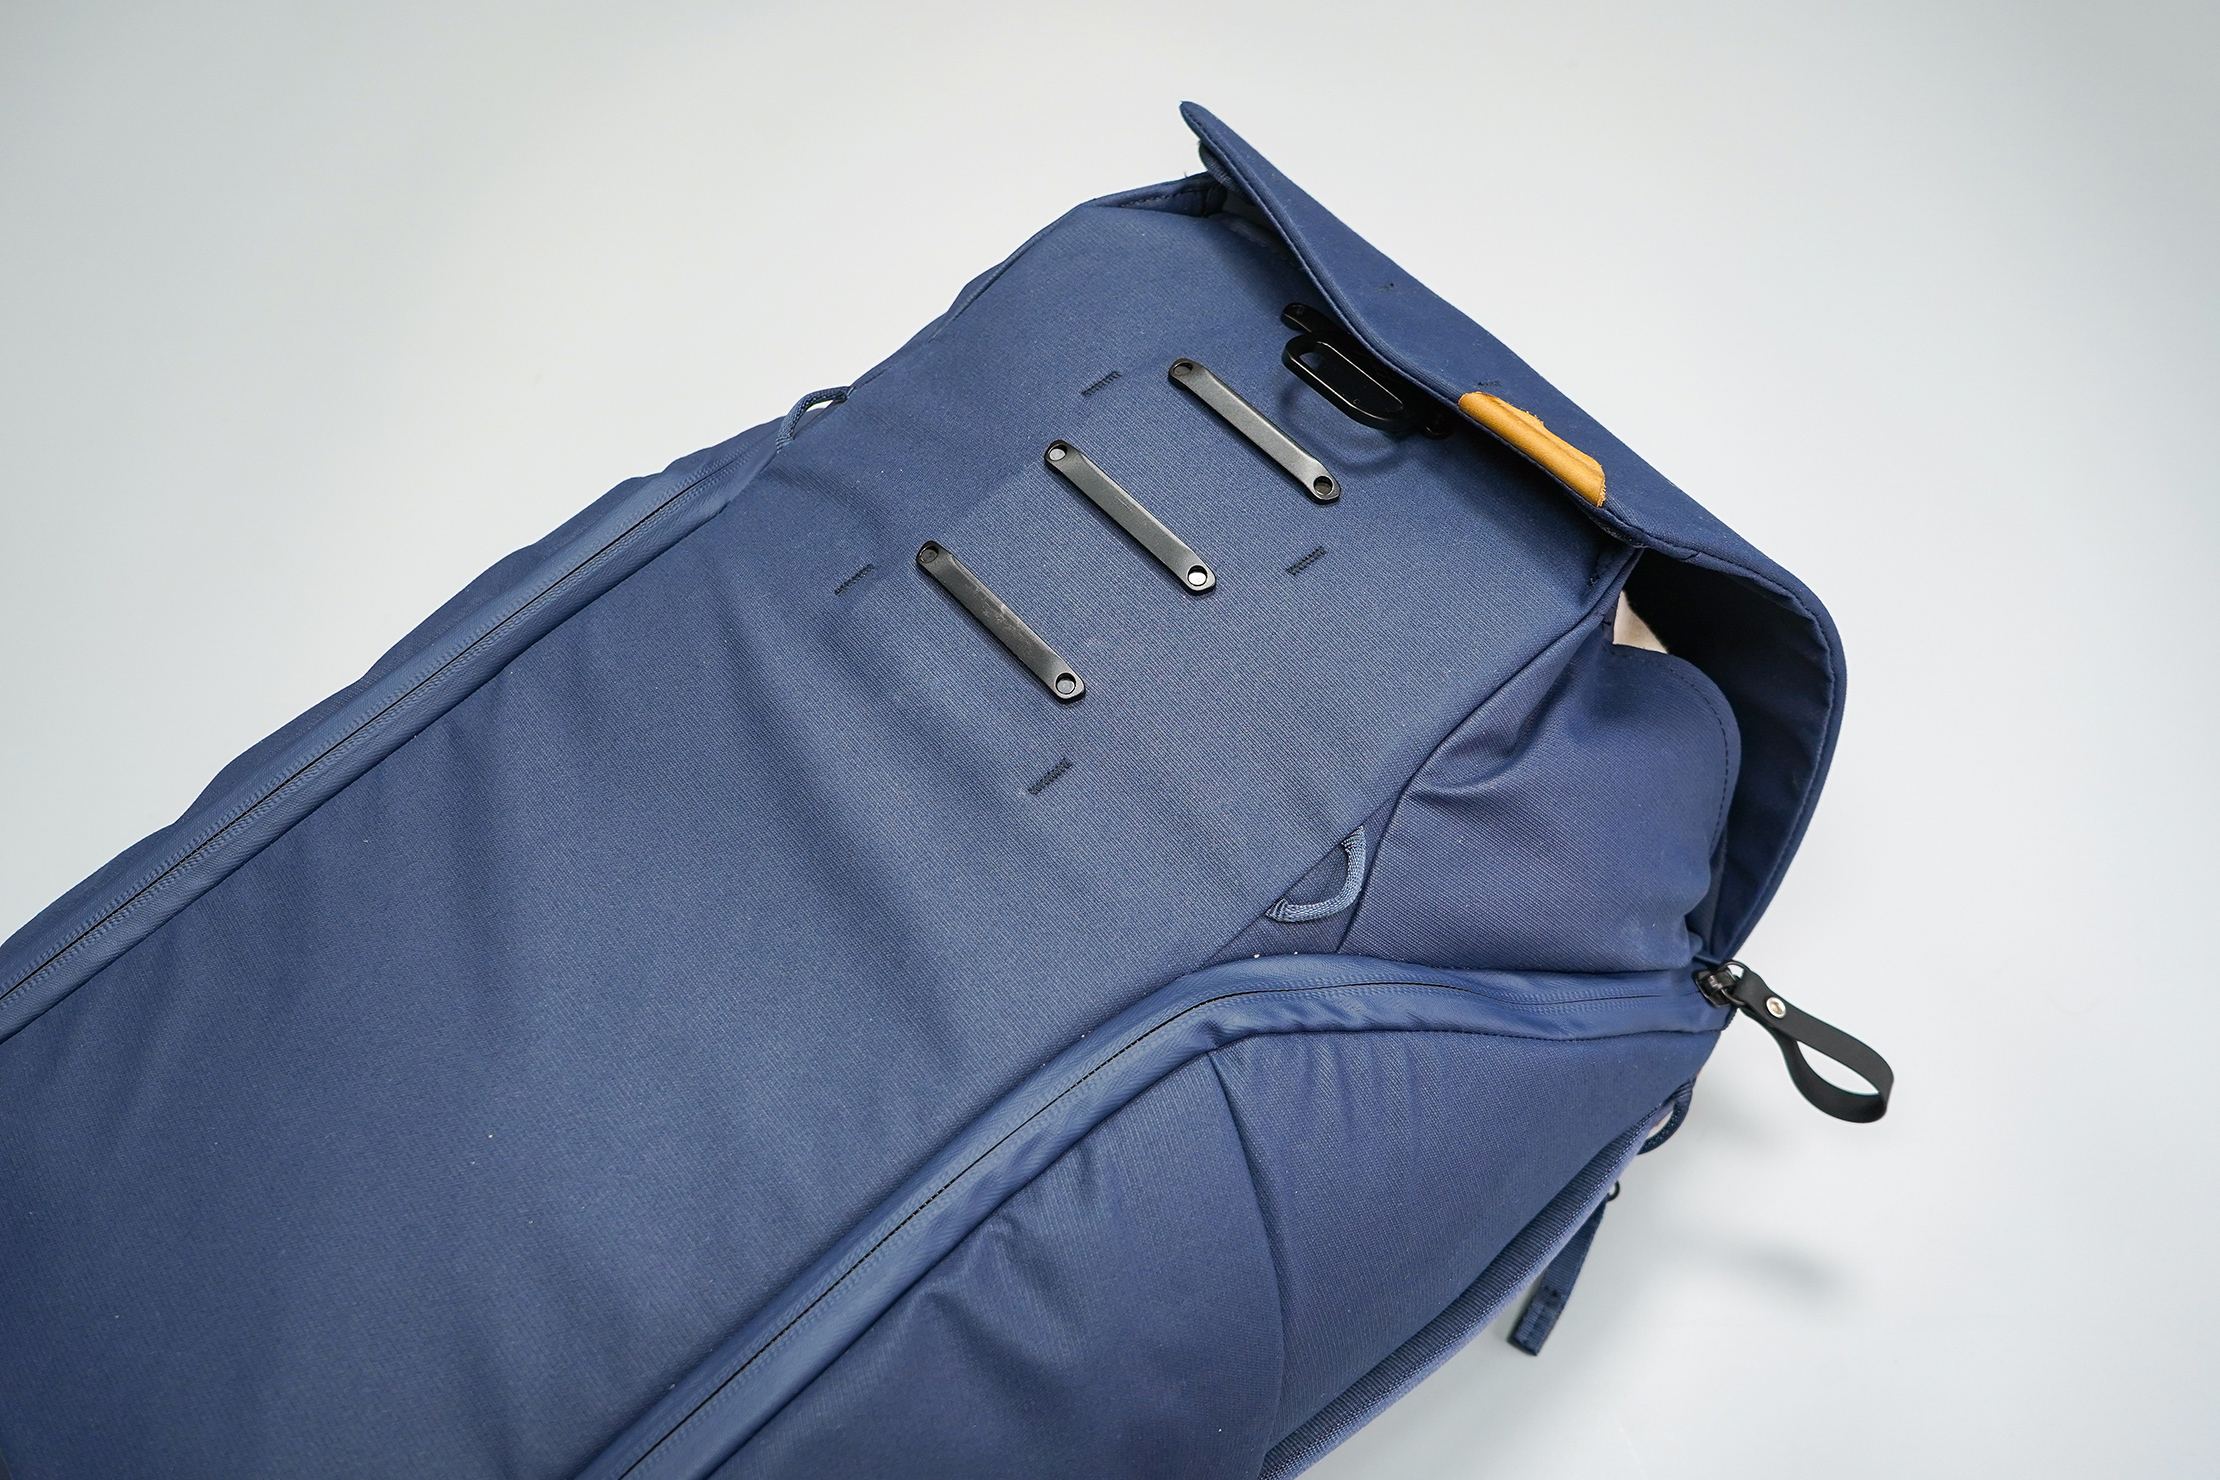 Peak Design Everyday Backpack 30L (V2) Attached At Highest MagLatch